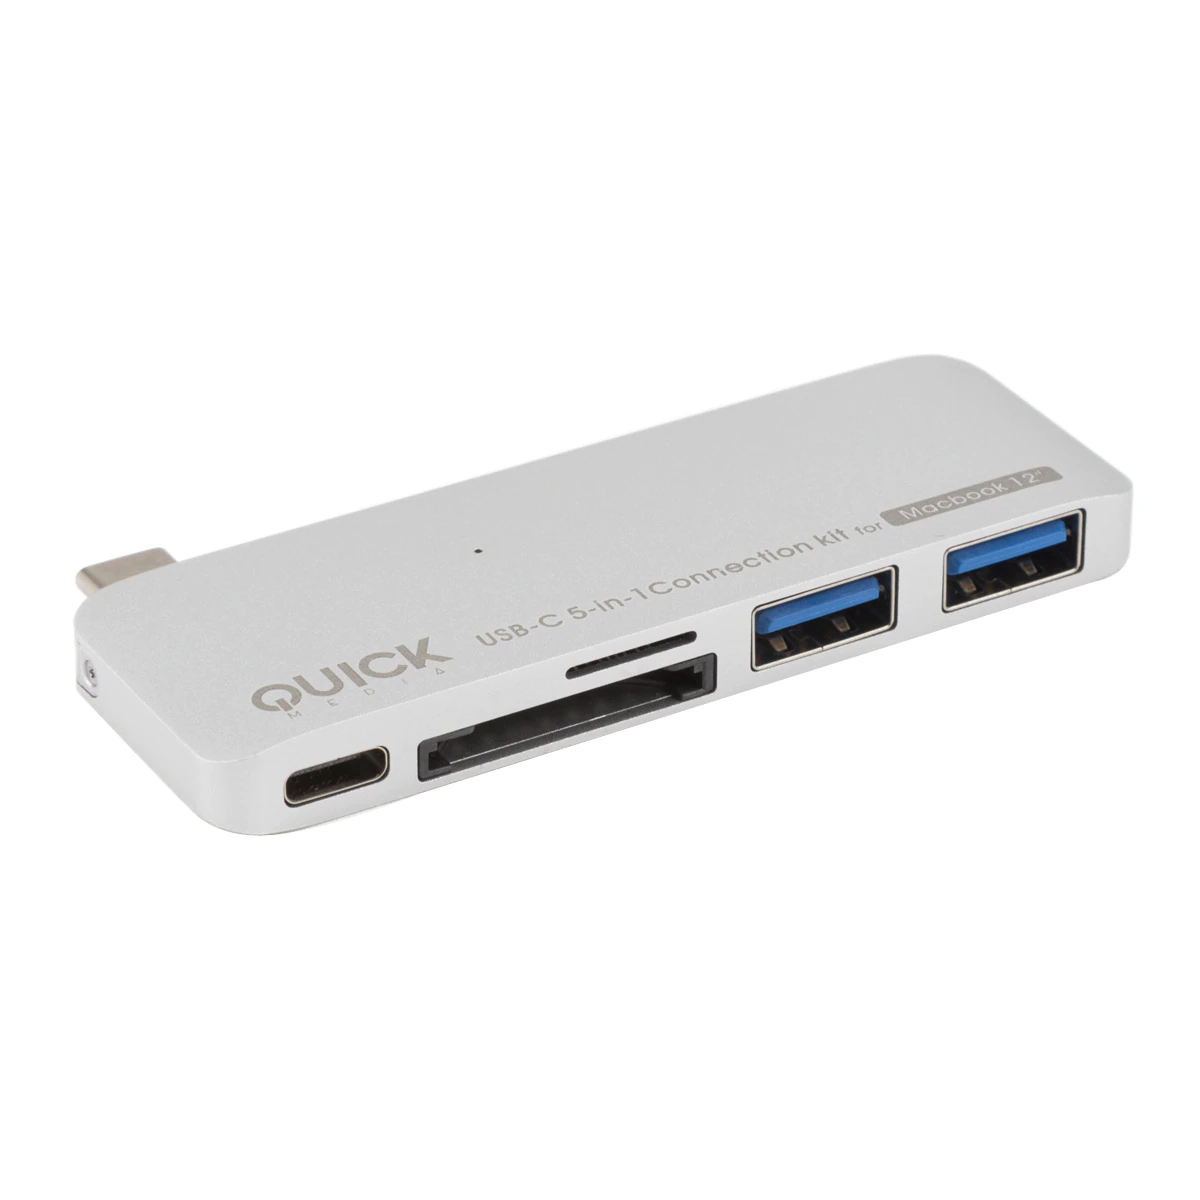 Kit 5 en 1 Quickmedia Adaptador USB Type C con función de carga